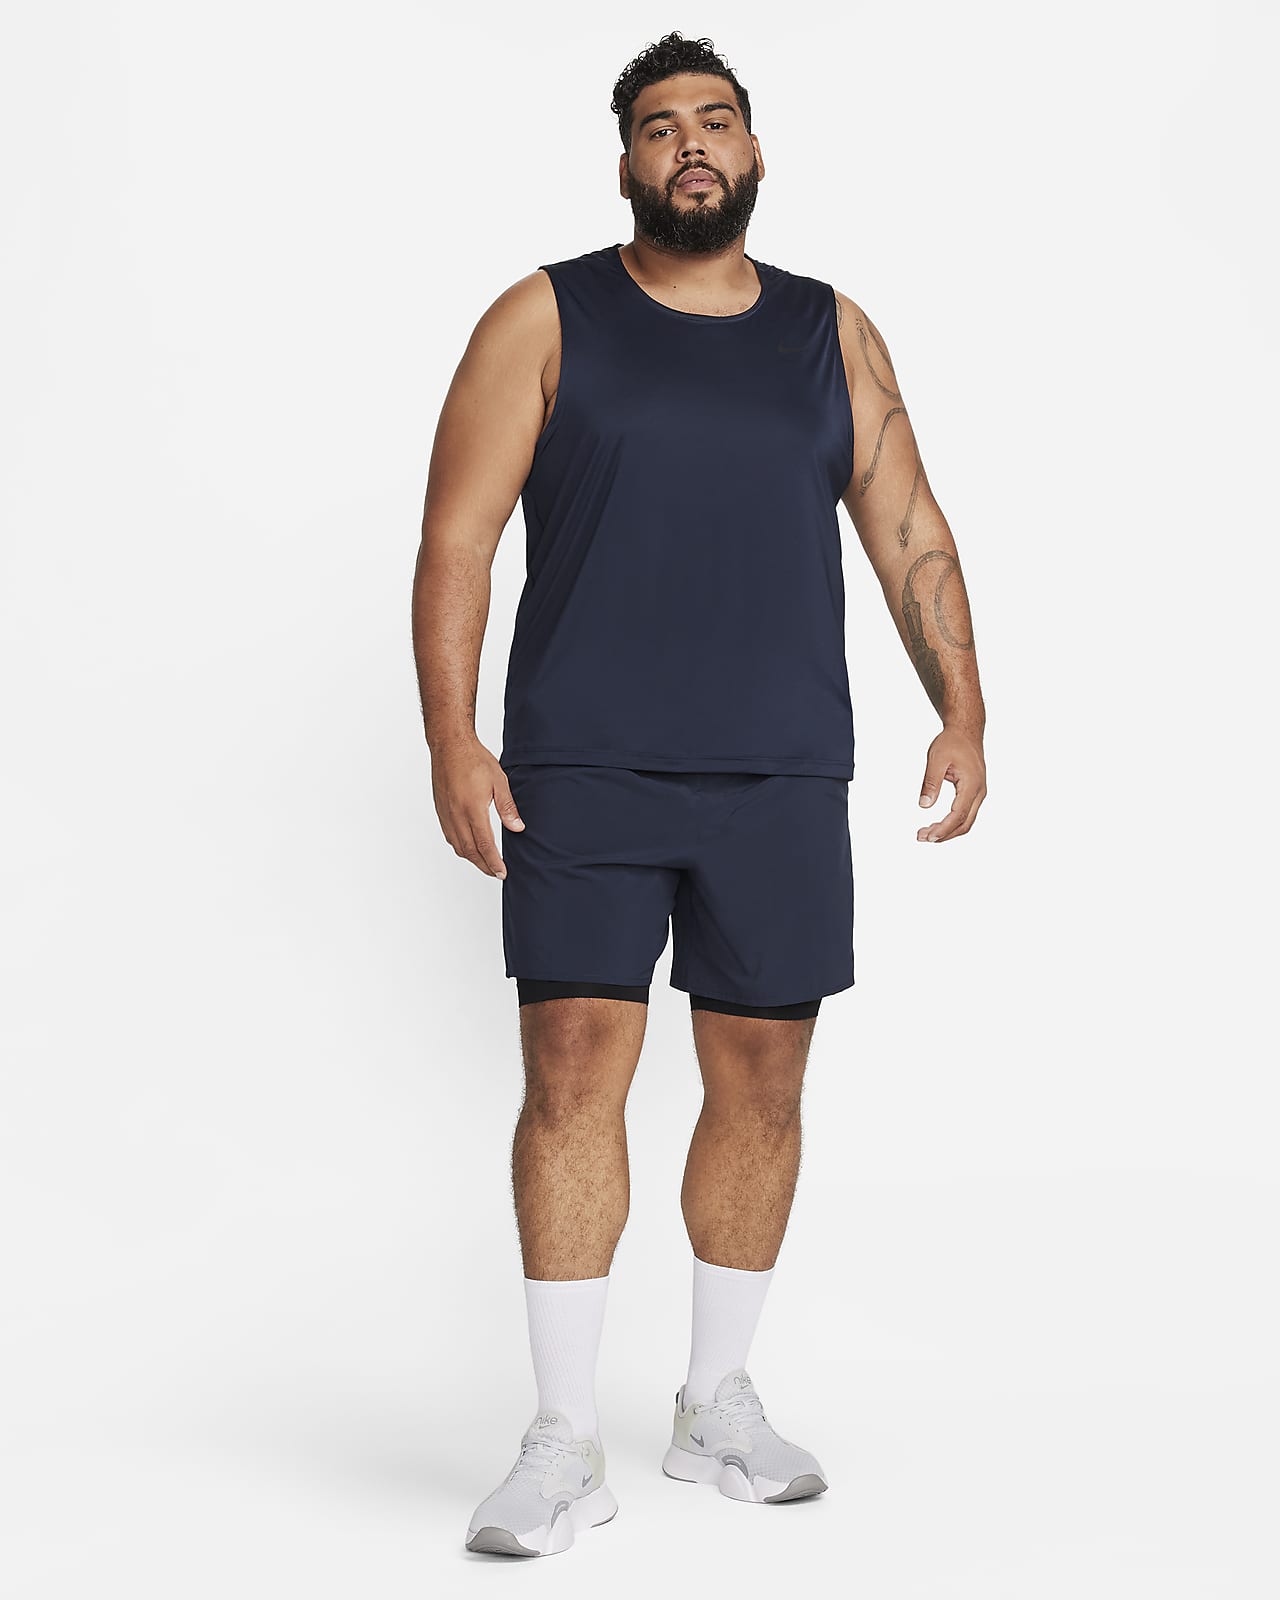 Débardeur Nike Dri-FIT Ready